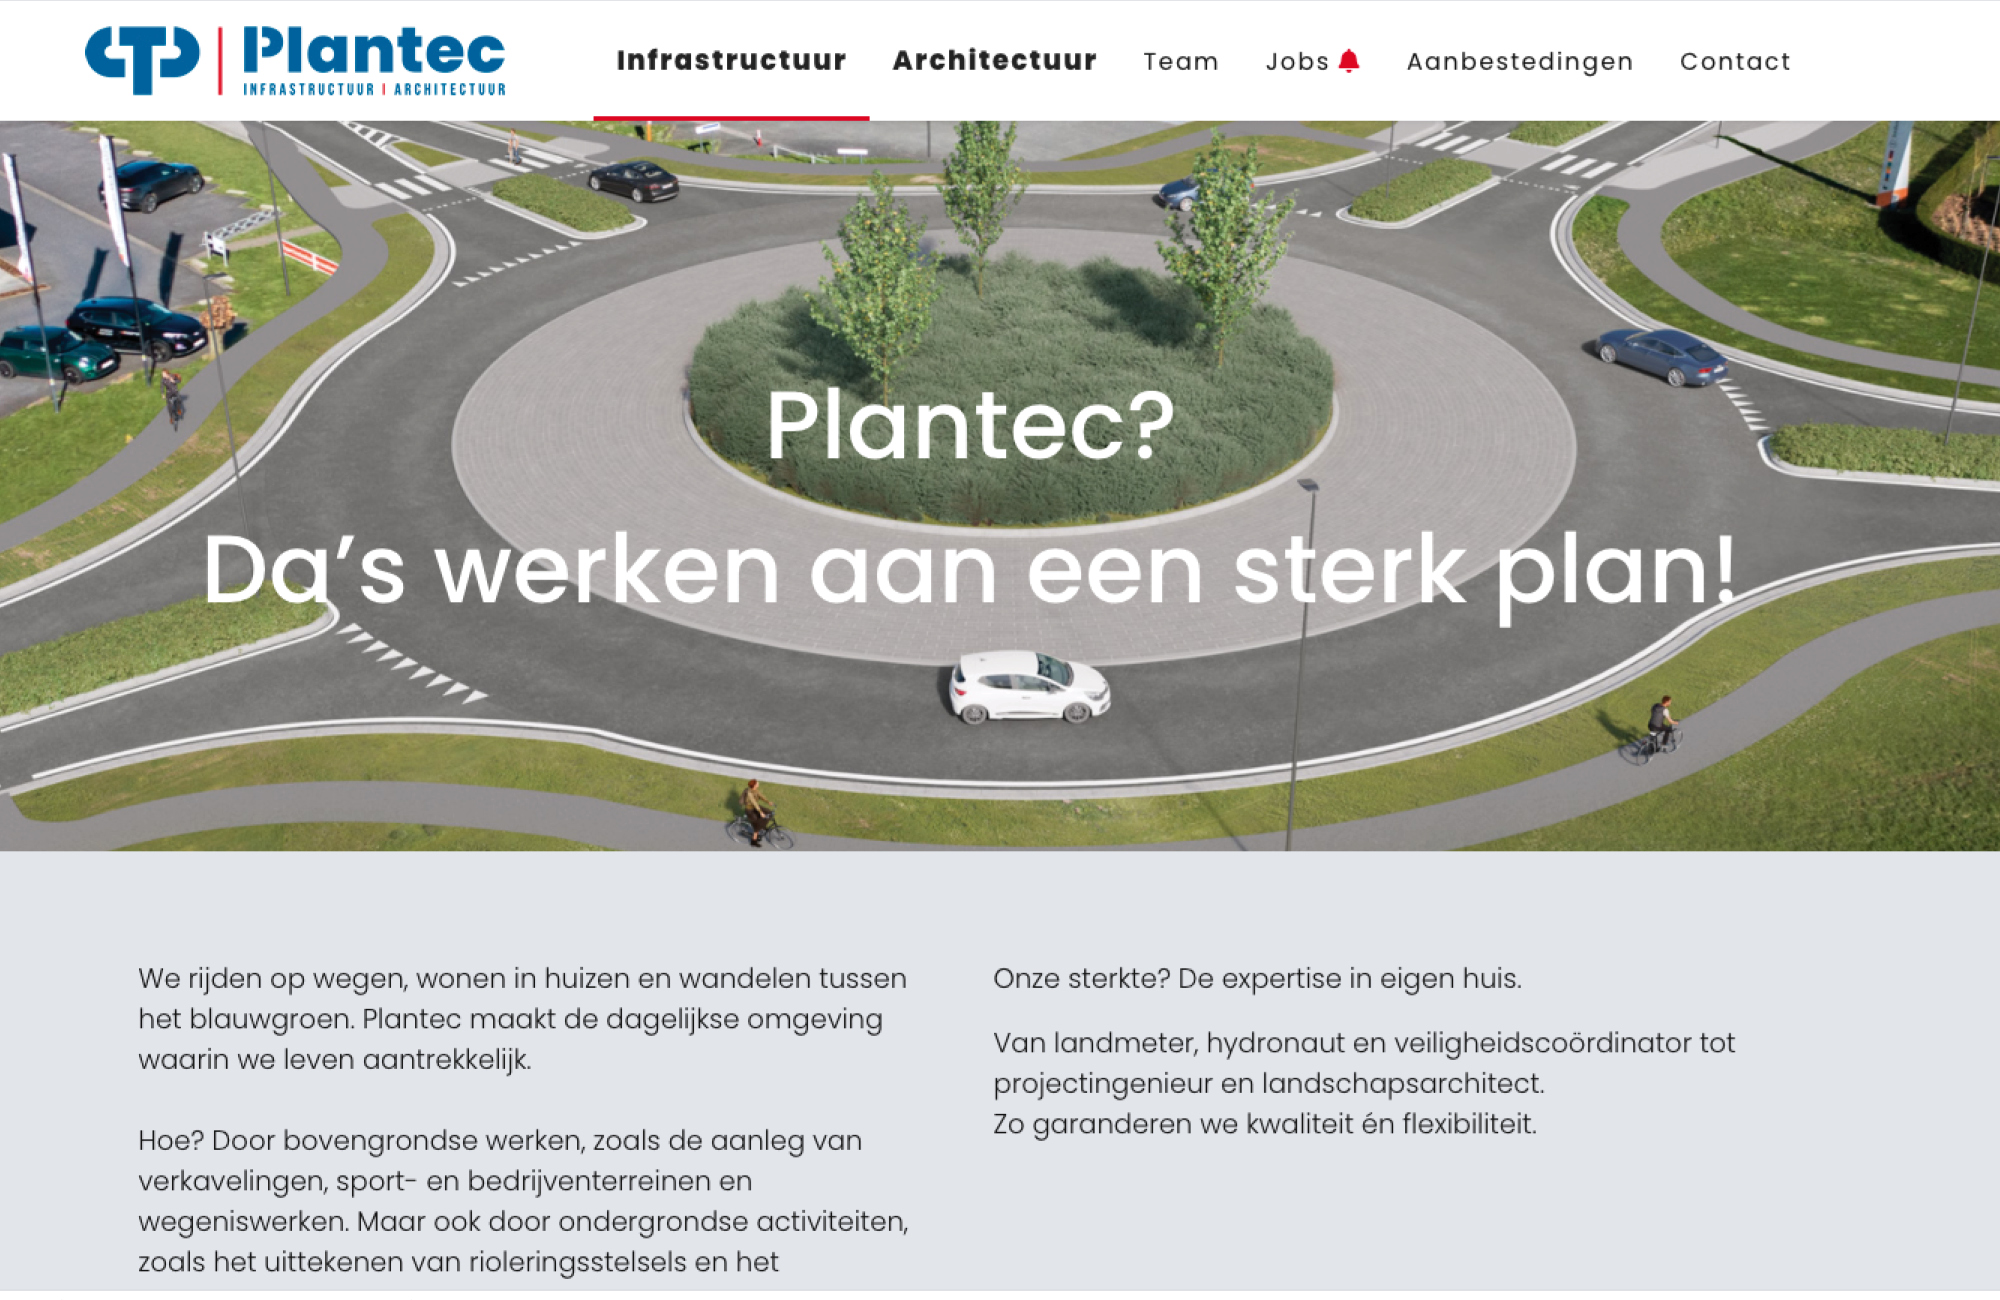 Plantec - ontwerpbreau voor infrastructuur en architectuur